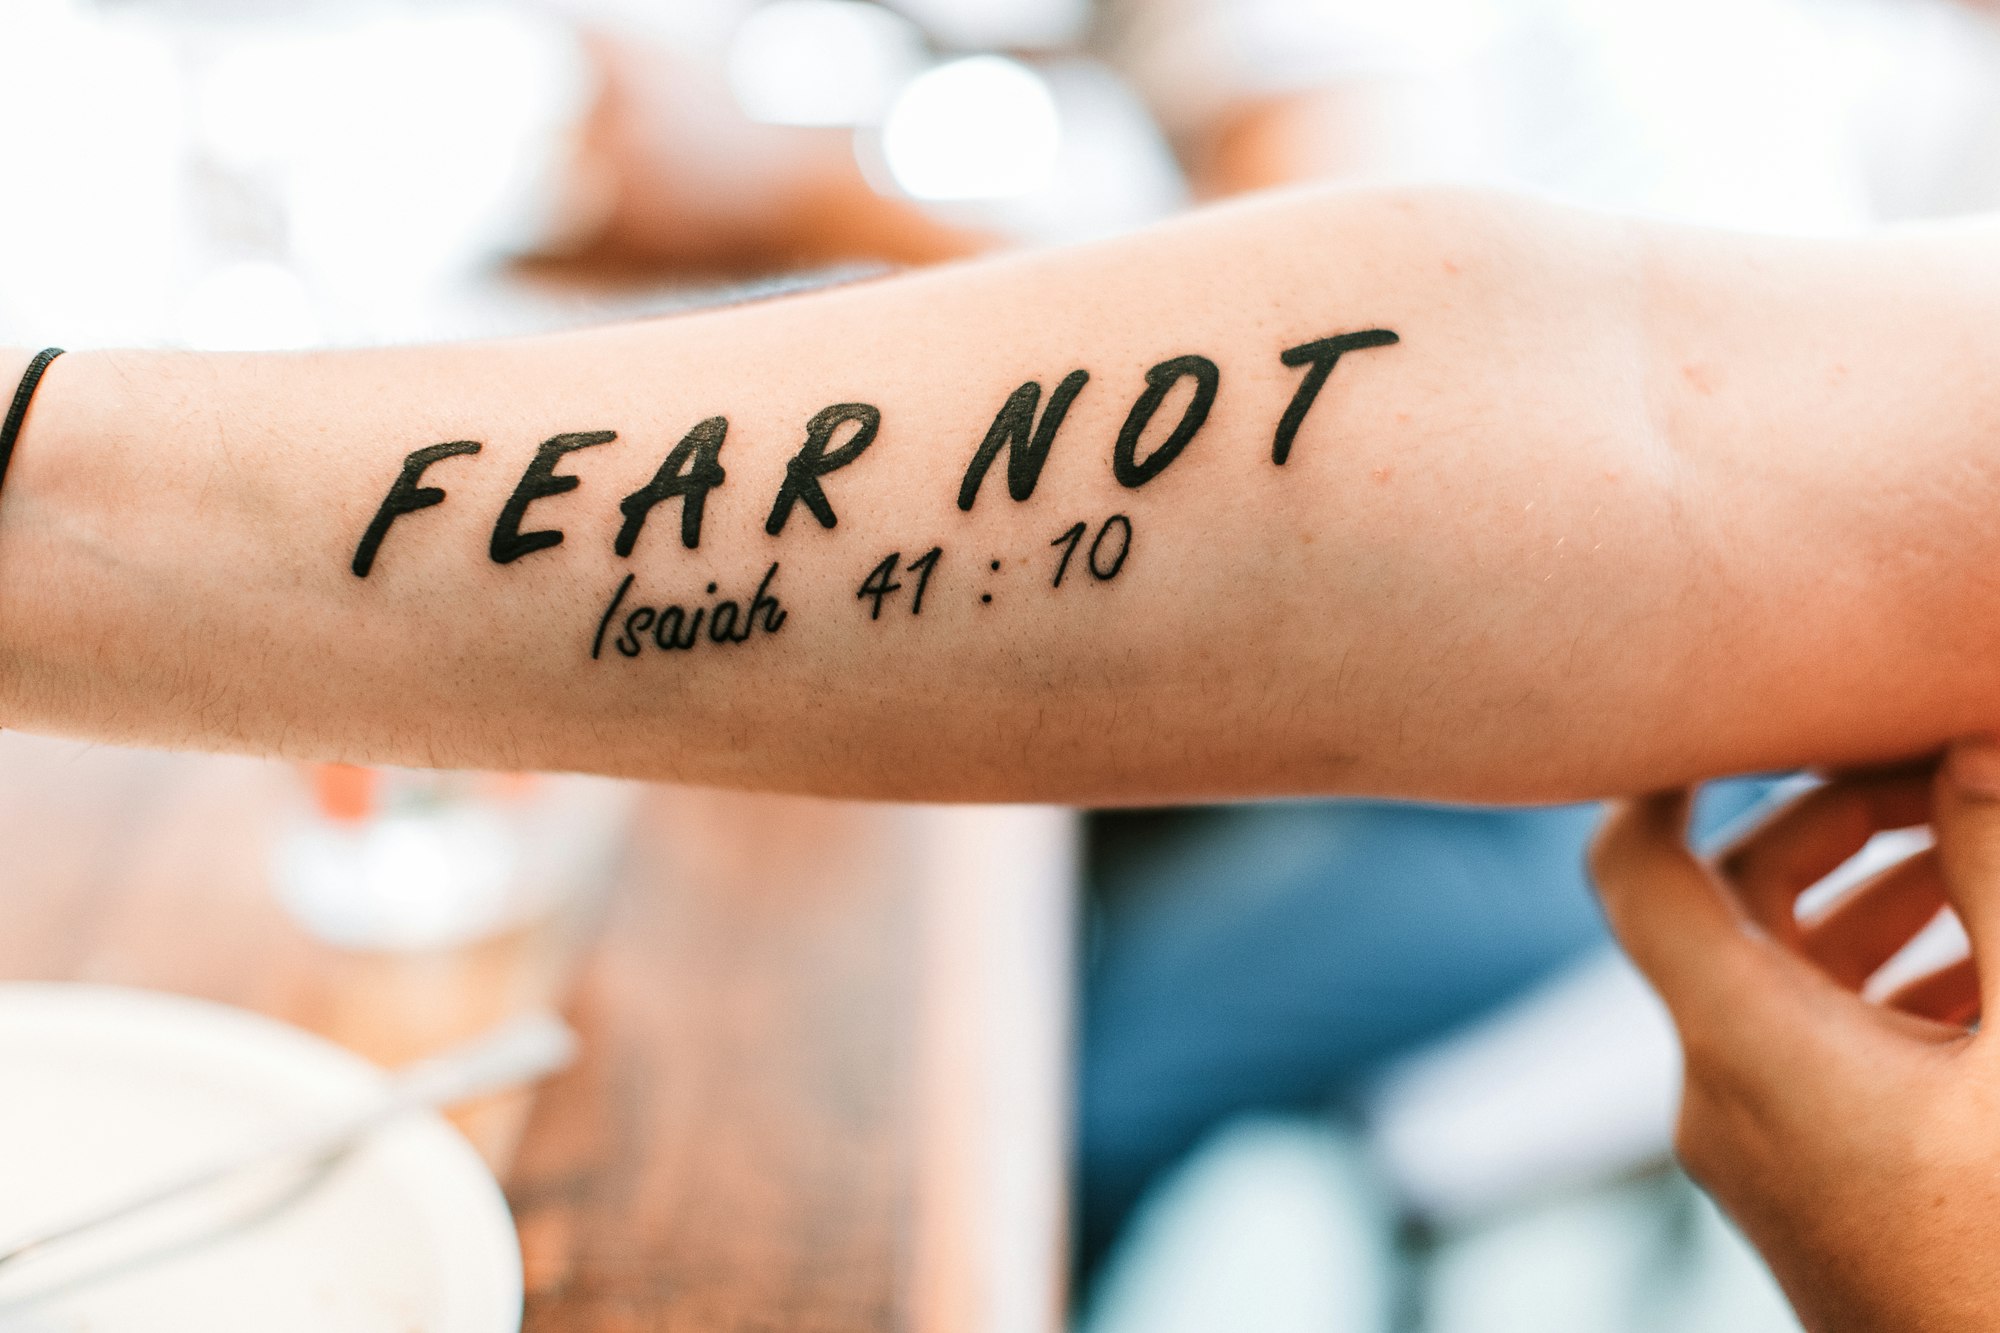 versículo da bíblia tatuado no braço